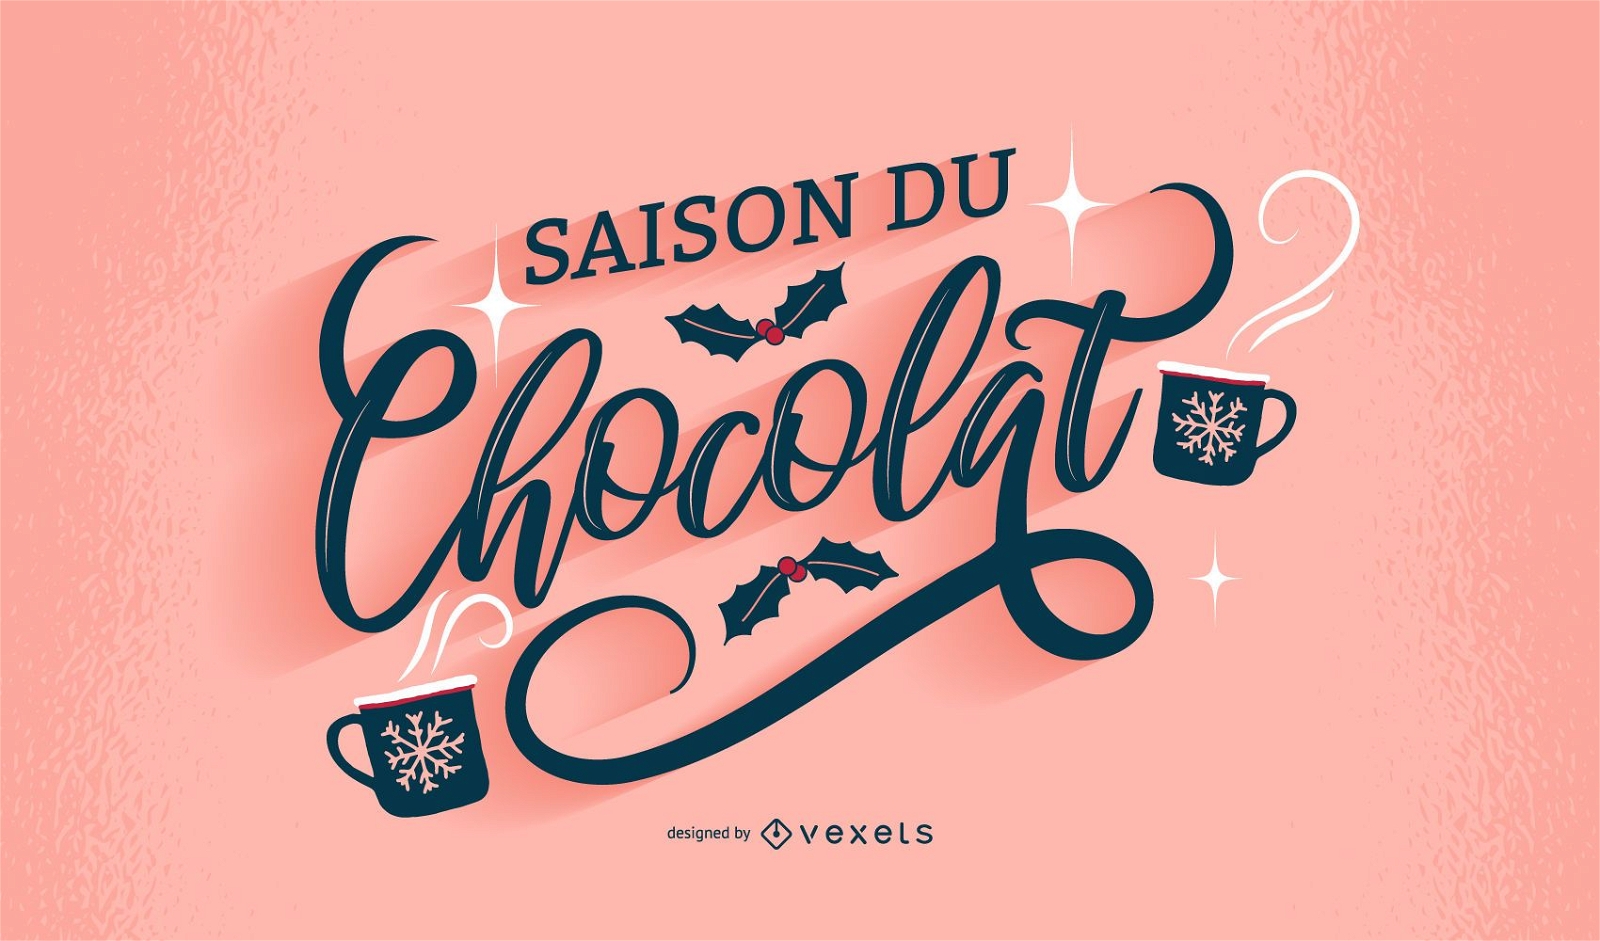 Französisches Schriftzugdesign der Schokoladensaison